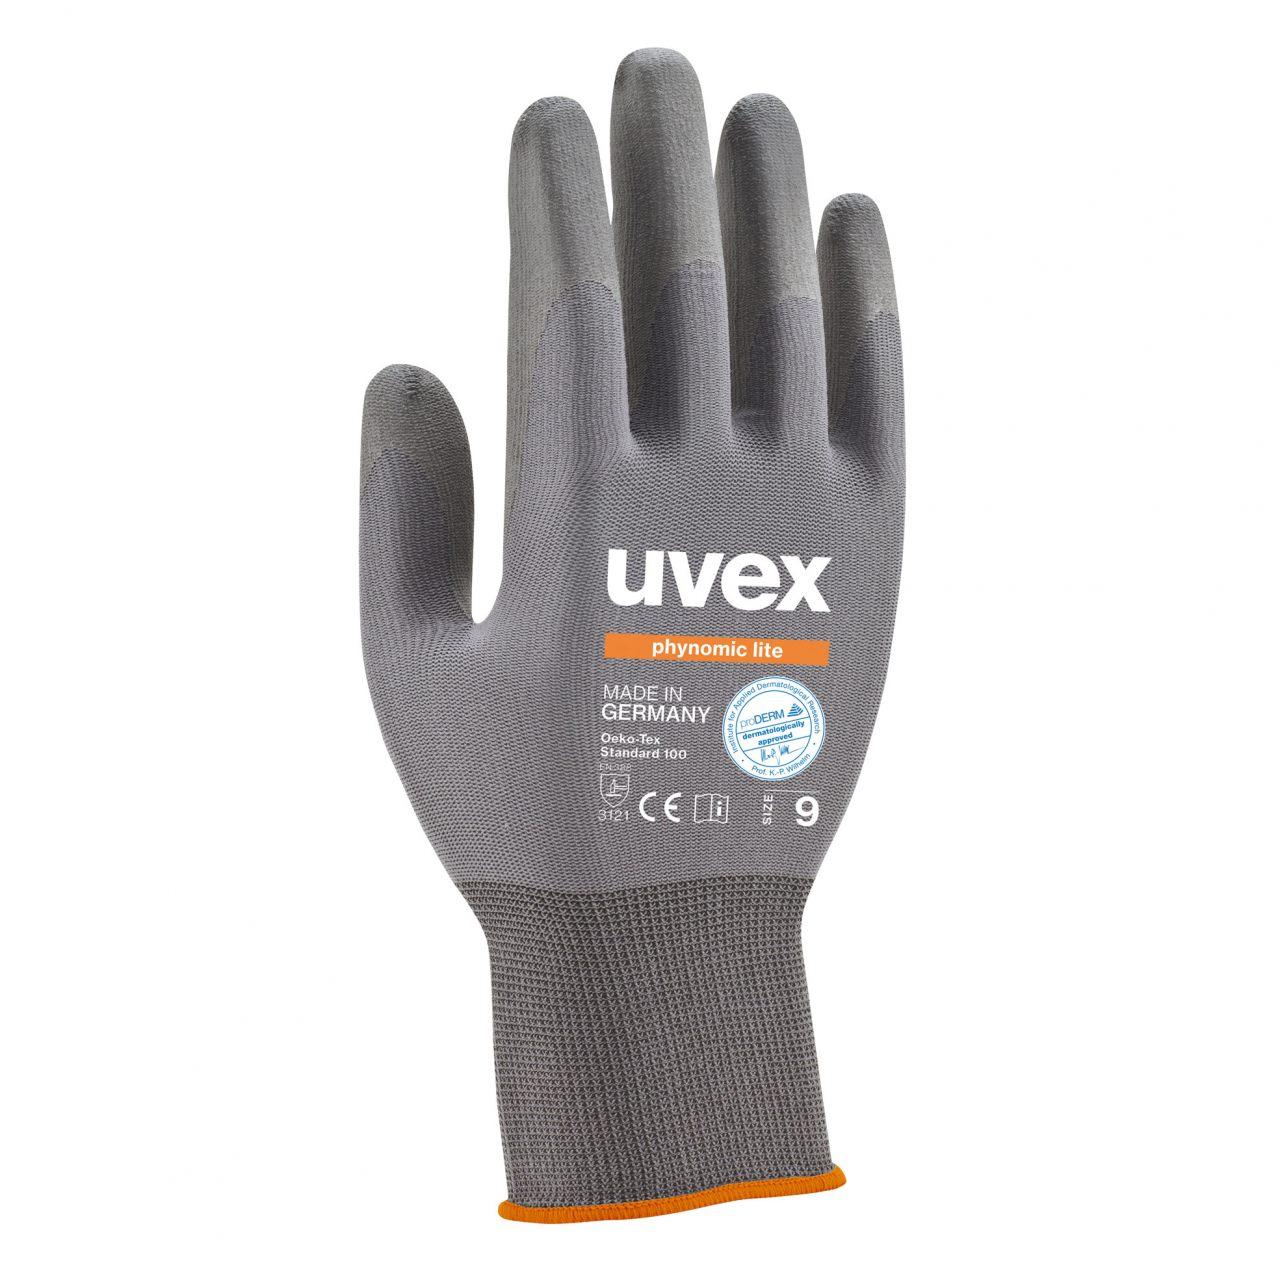 Защитные перчатки uvex финомик лайт, фото 1